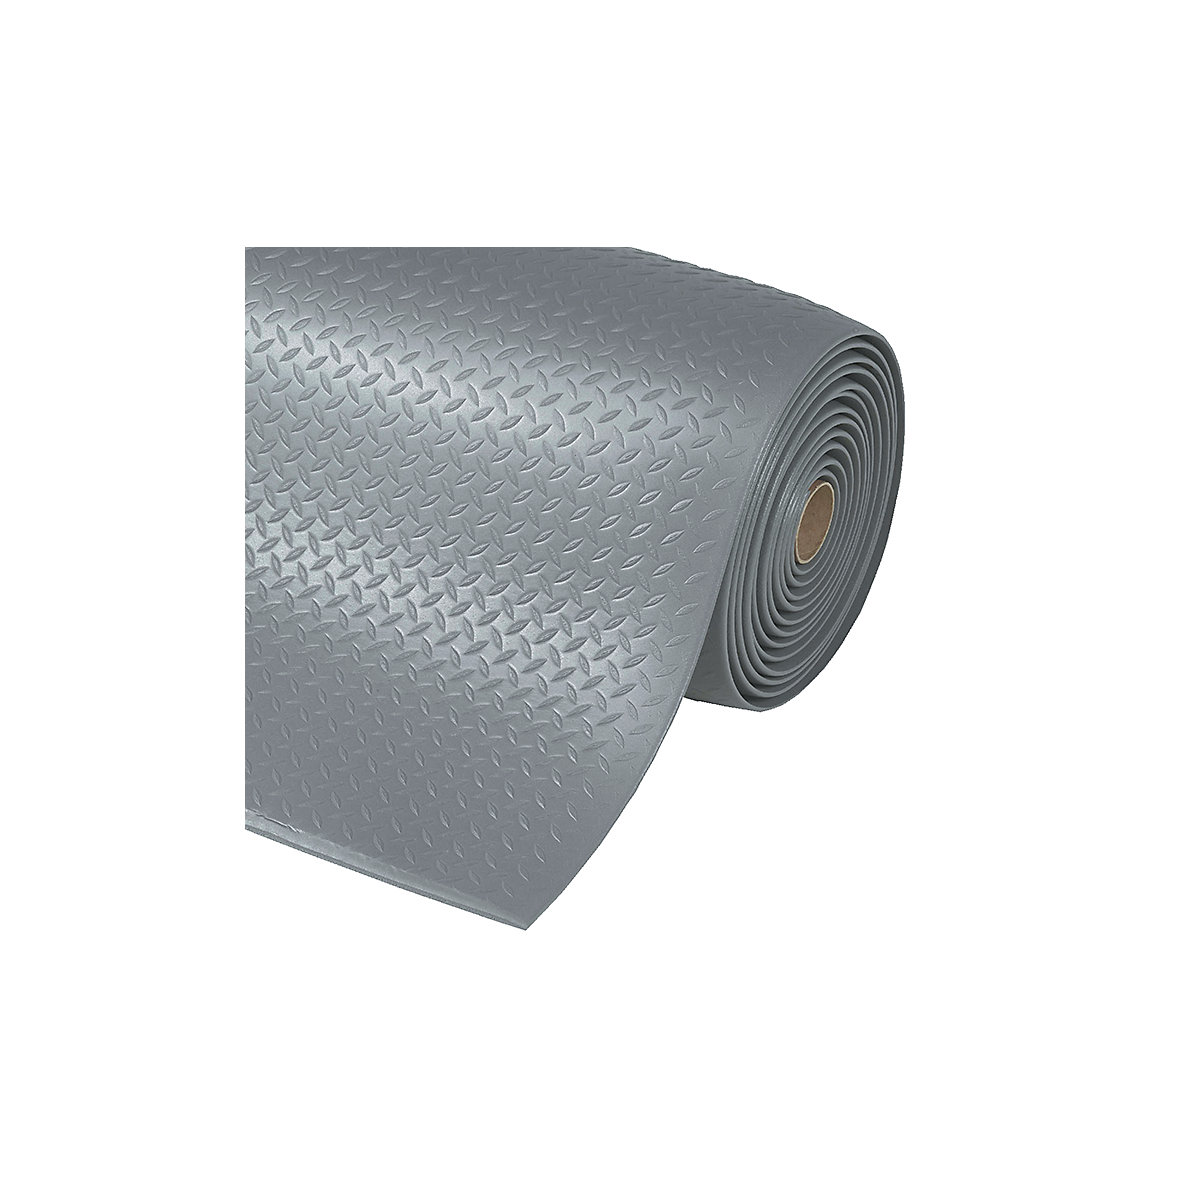 Tapis pour poste de travail Diamond Sof-Tred™ – NOTRAX, largeur 600 mm, au mètre, gris-5